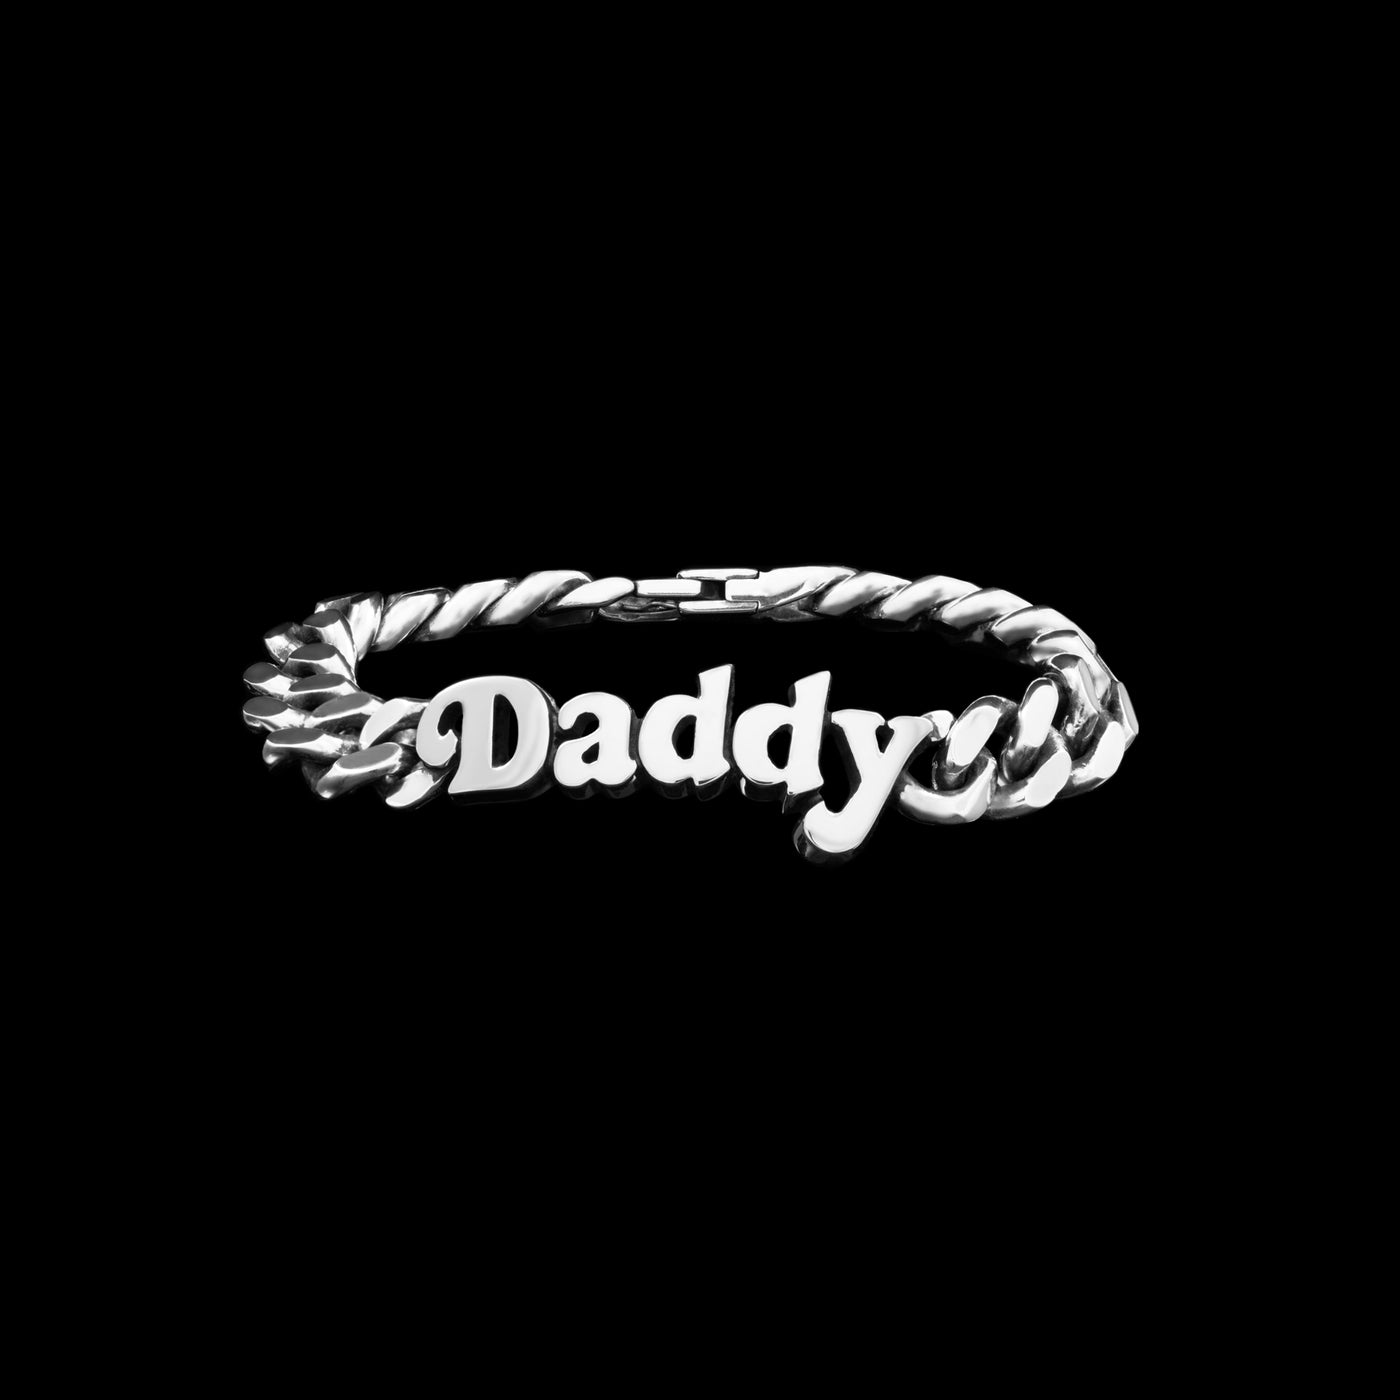 Daddy Bracelet